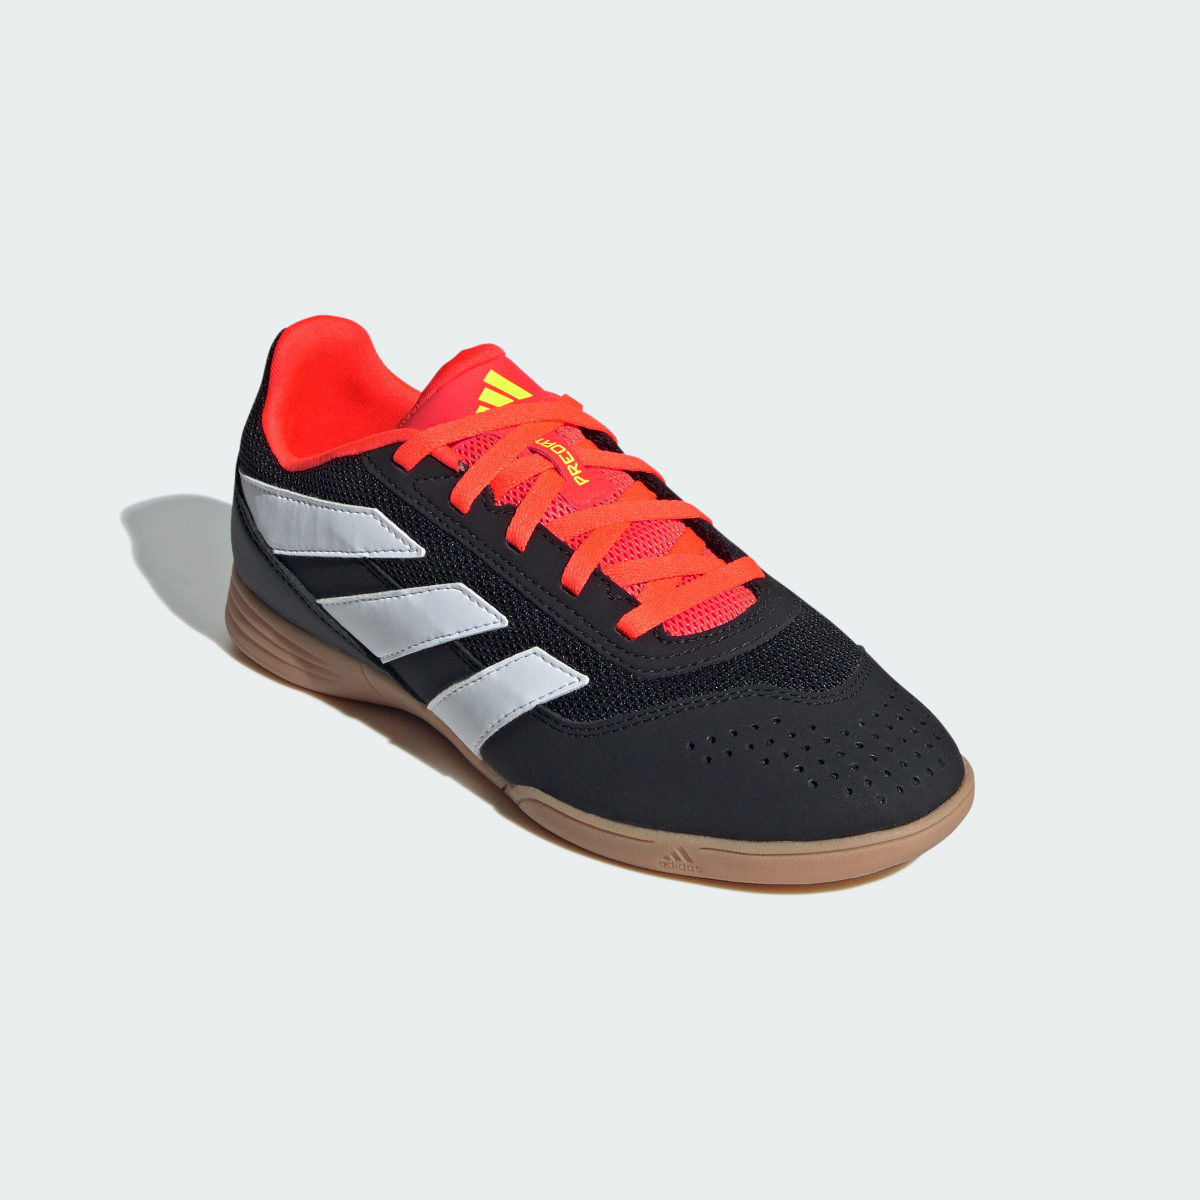 Adidas Predator Club Indoor Sala Football Boots. 4